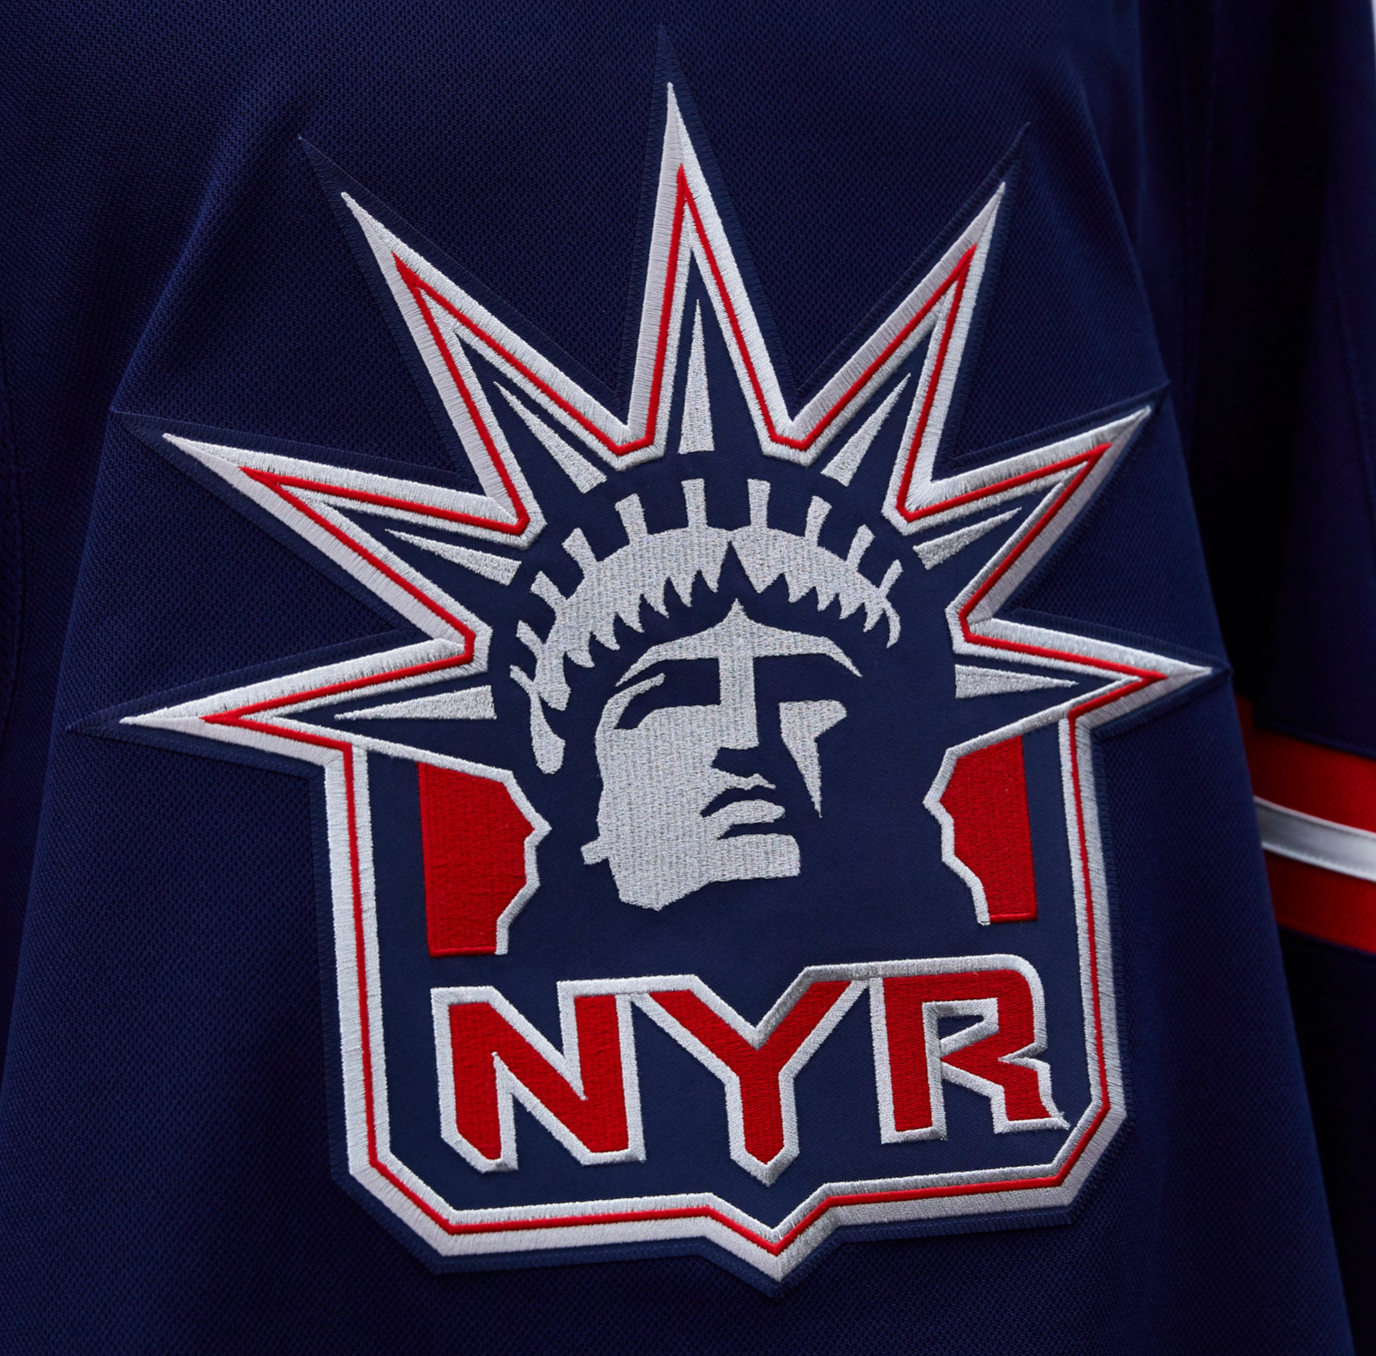 New York Ranger prospect added to Team USA preliminary roster